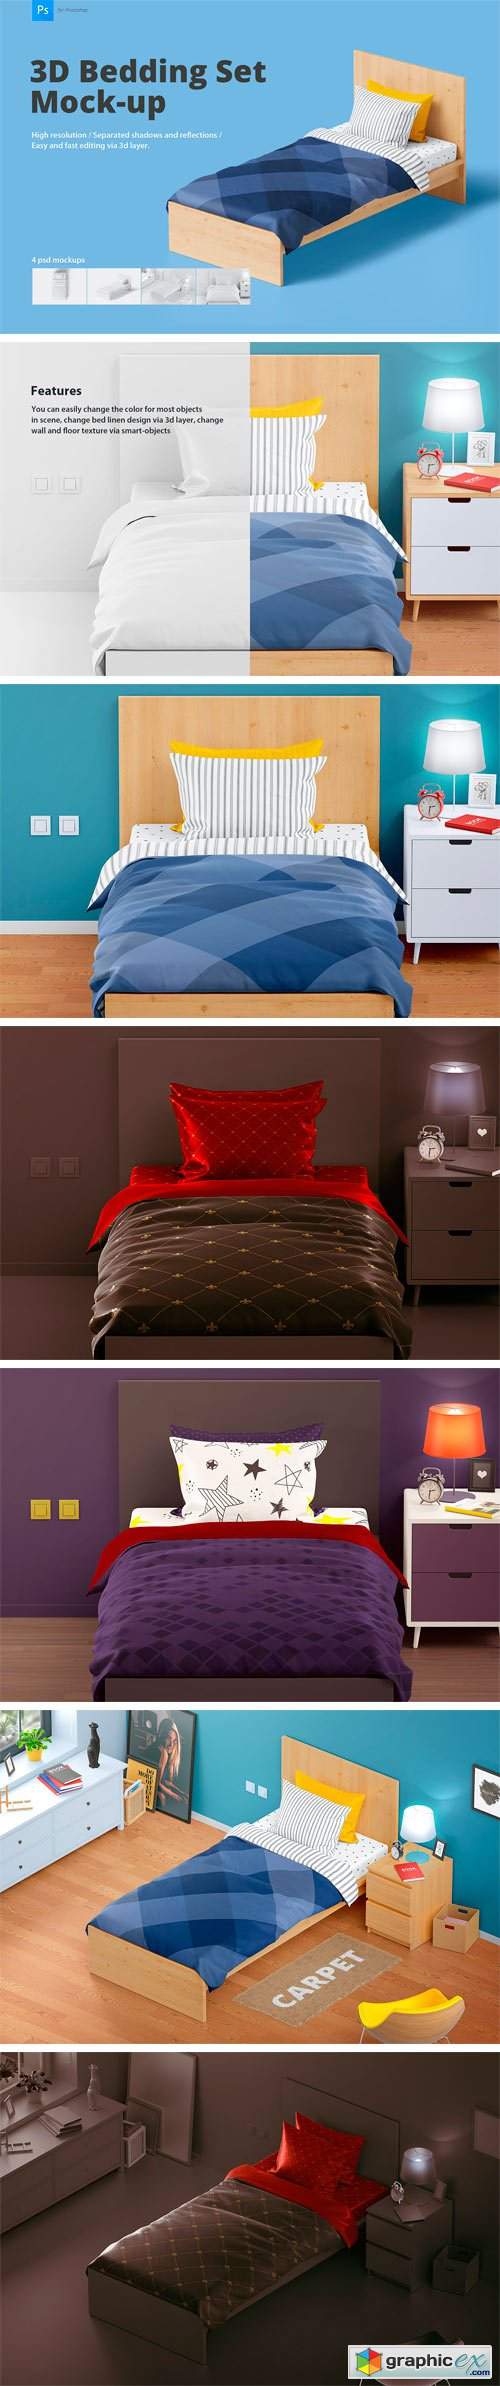 Bedding Set Mockup | Single Bed